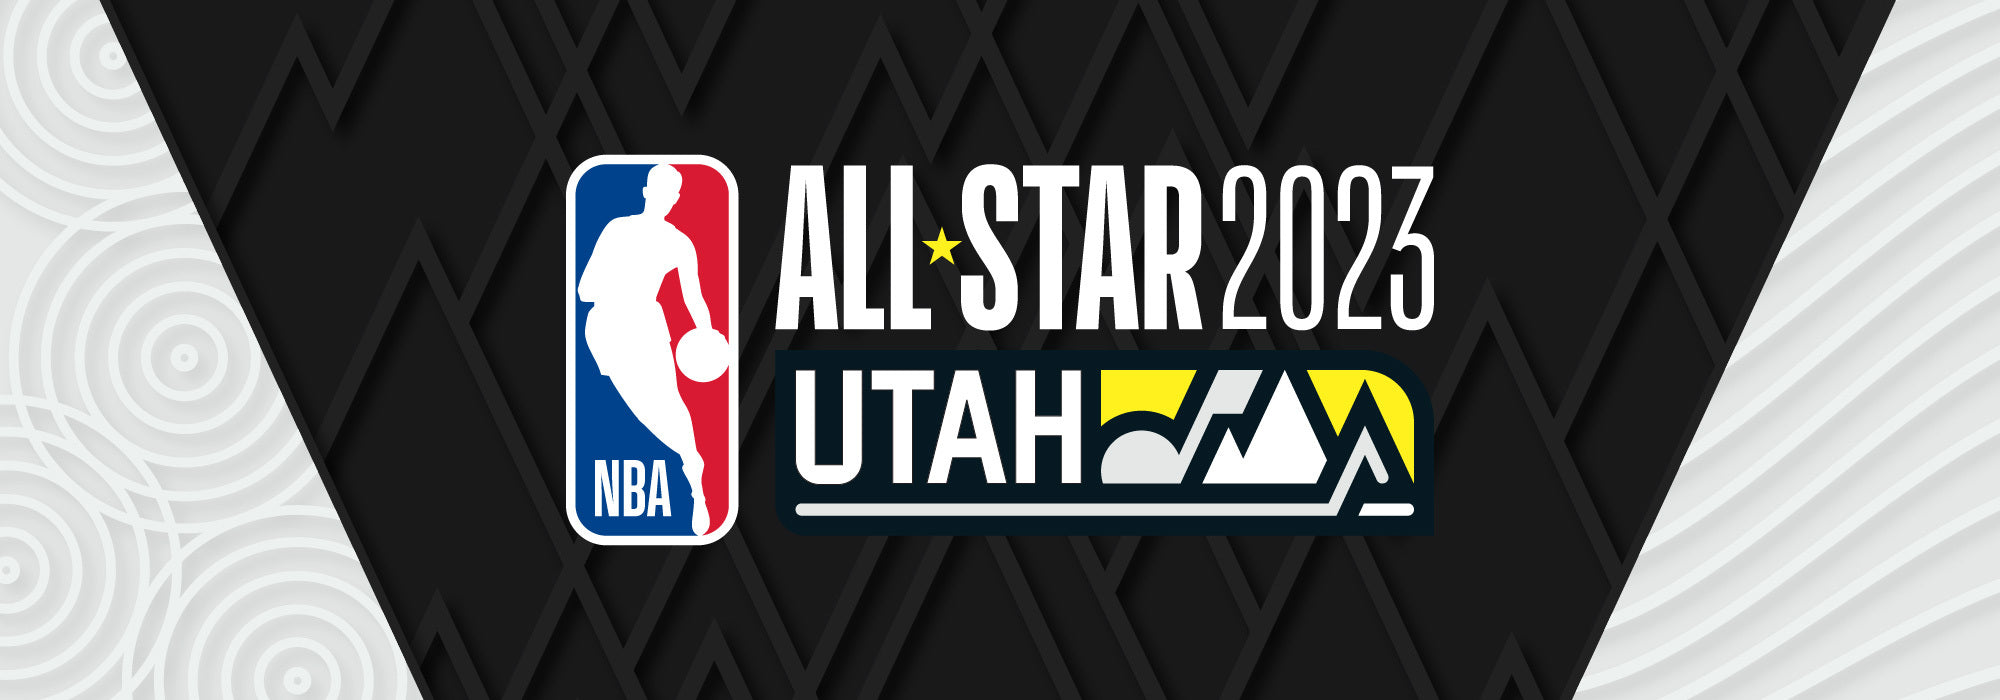 All Star Jerseys – Utah Jazz Team Store